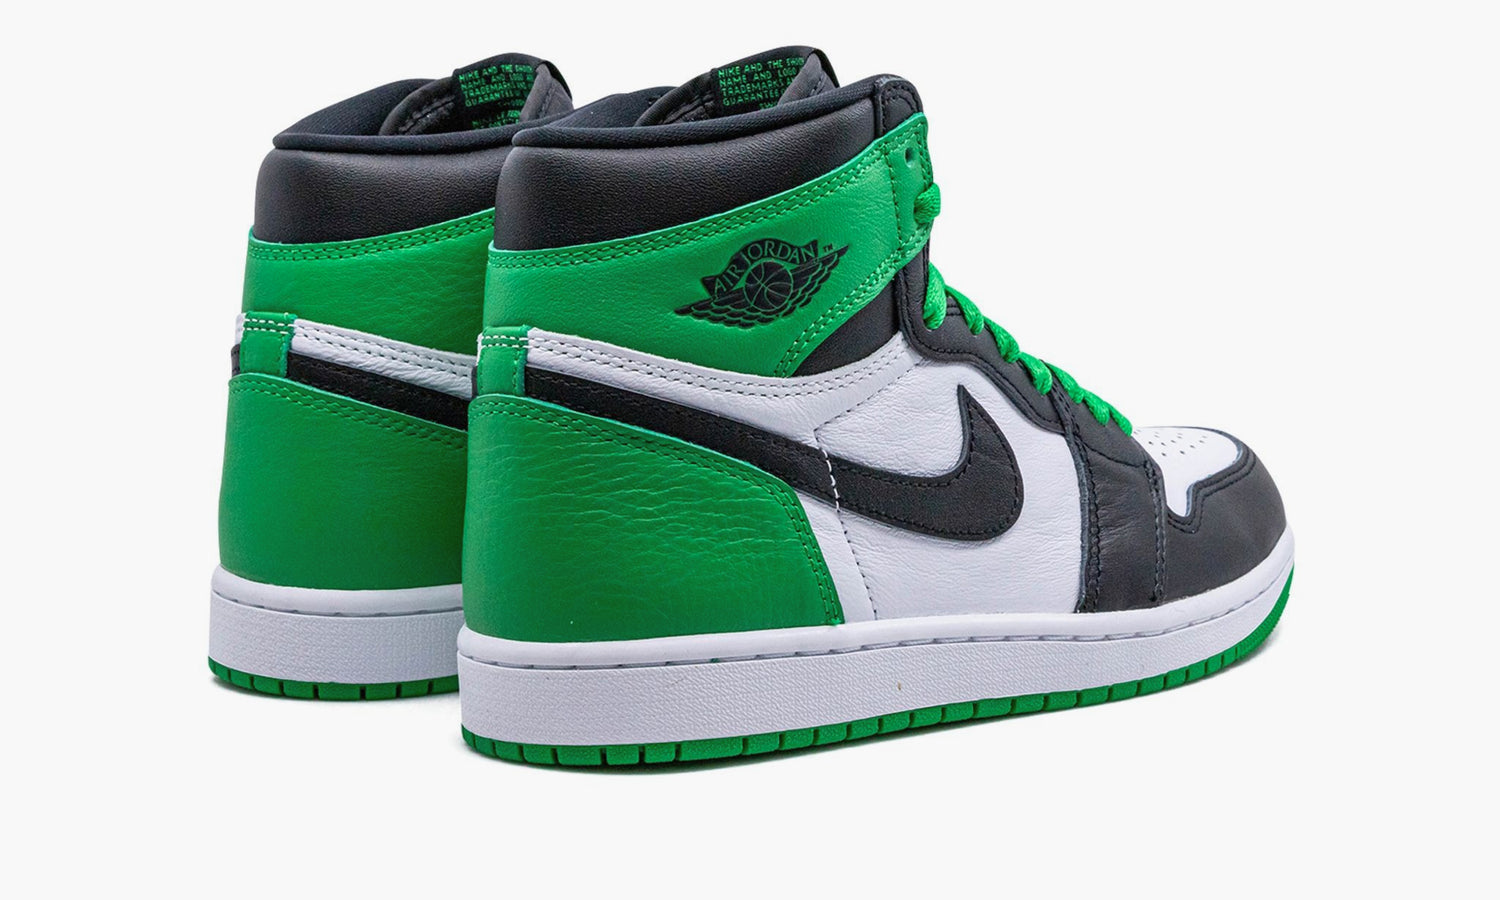 Nike Air Jordan 1 High OG “Lucky Green” - DZ5485 031 | Grailshop